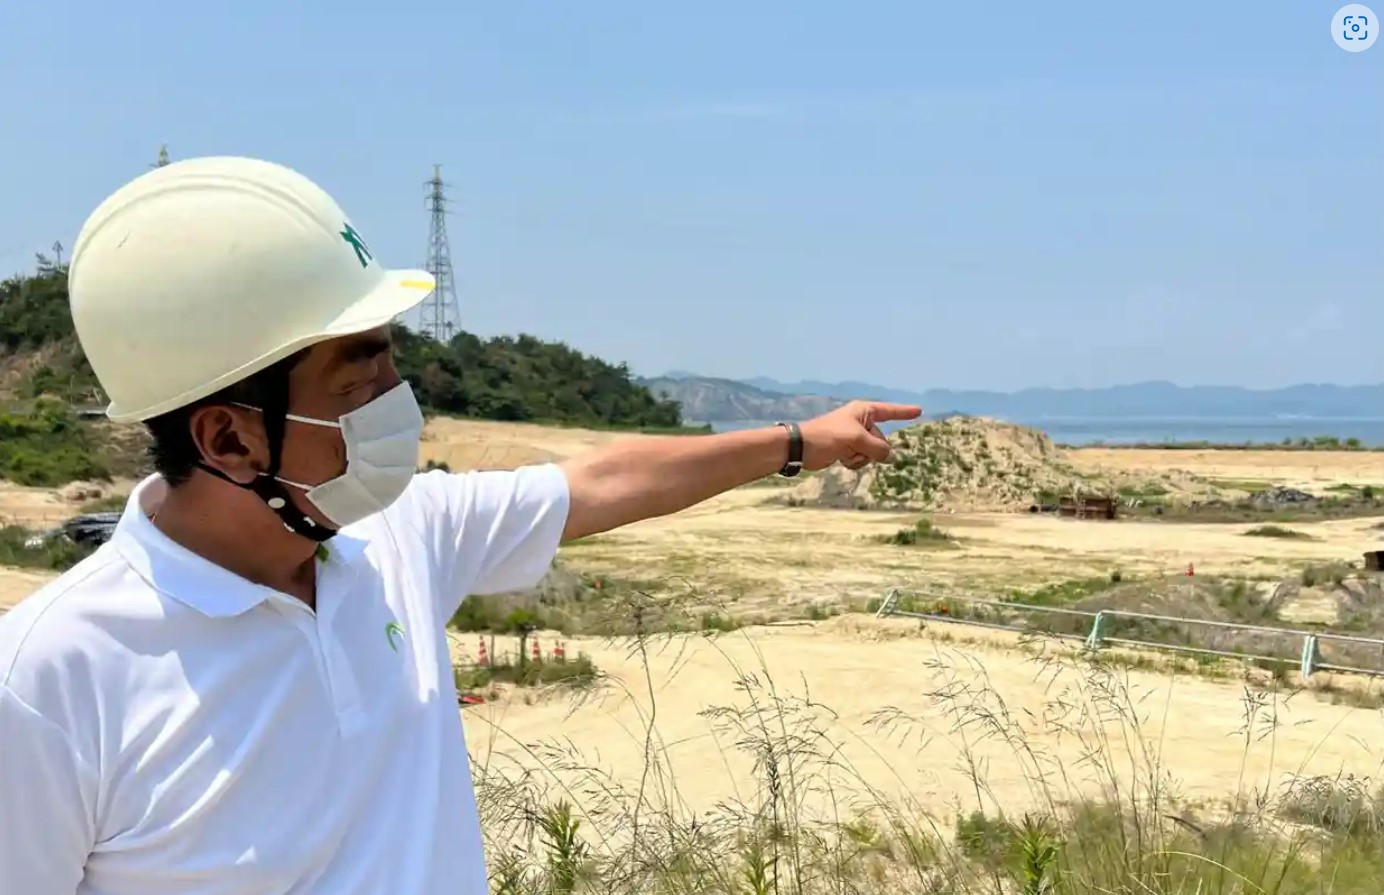 Địa điểm trước đây, trên đảo Teshima, là trường hợp tồi tệ nhất của Nhật Bản về việc đổ chất thải công nghiệp bất hợp pháp. Ảnh: Justin McCurry / The Guardian